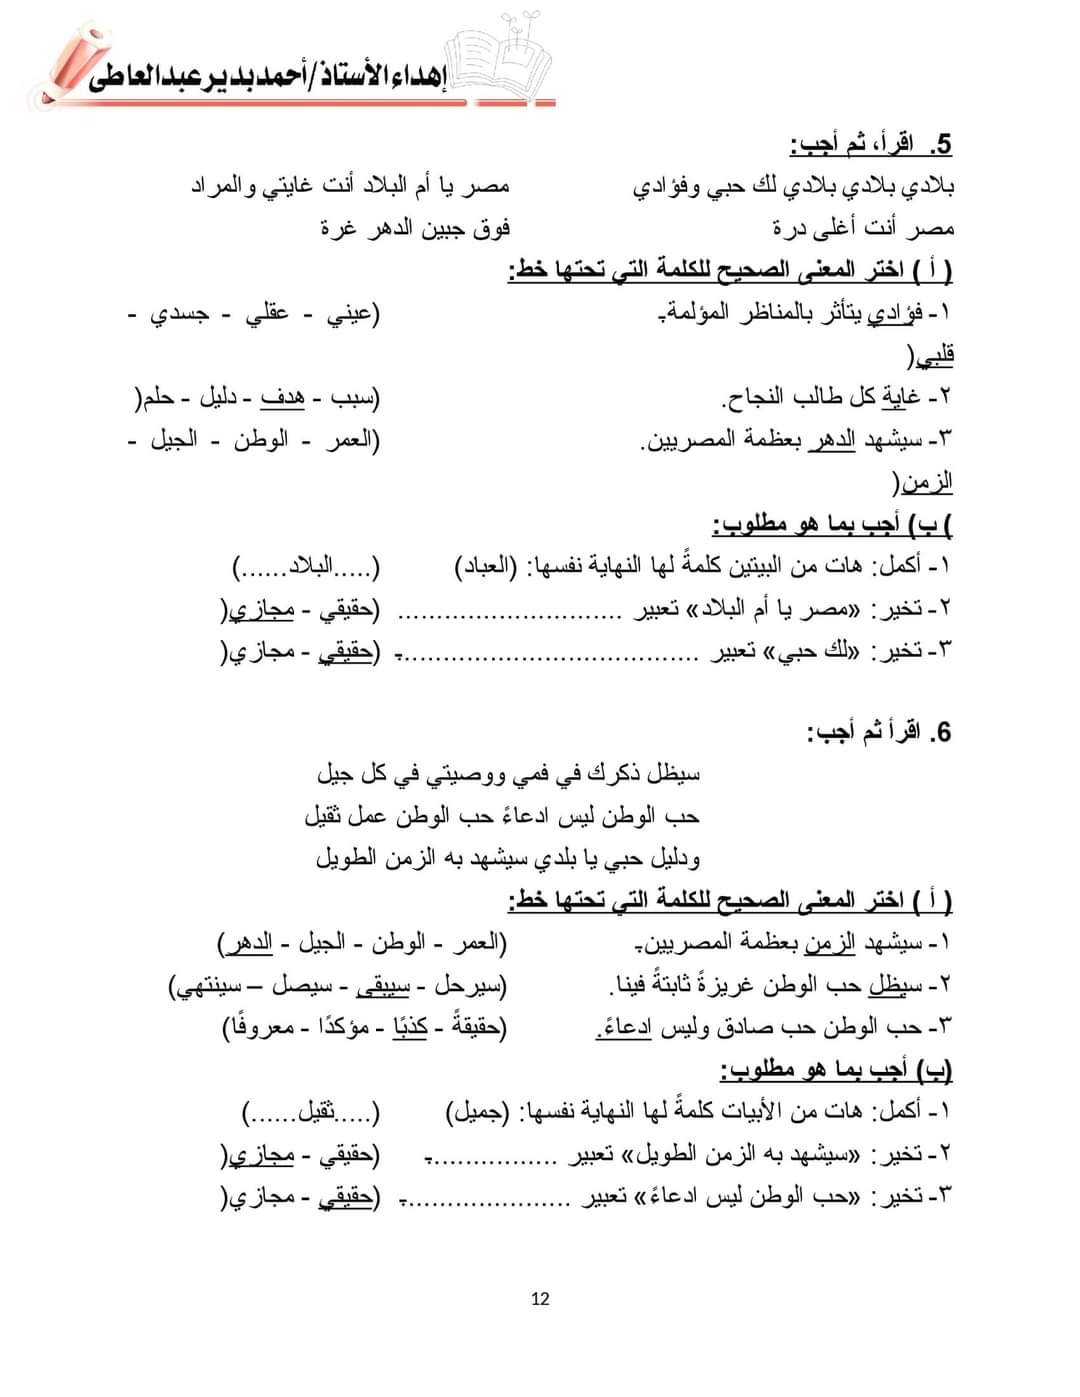 مراجعة ليلة الامتحان لغة عربية رابعة ابتدائي - اجابة اسئلة بنك المعرفة